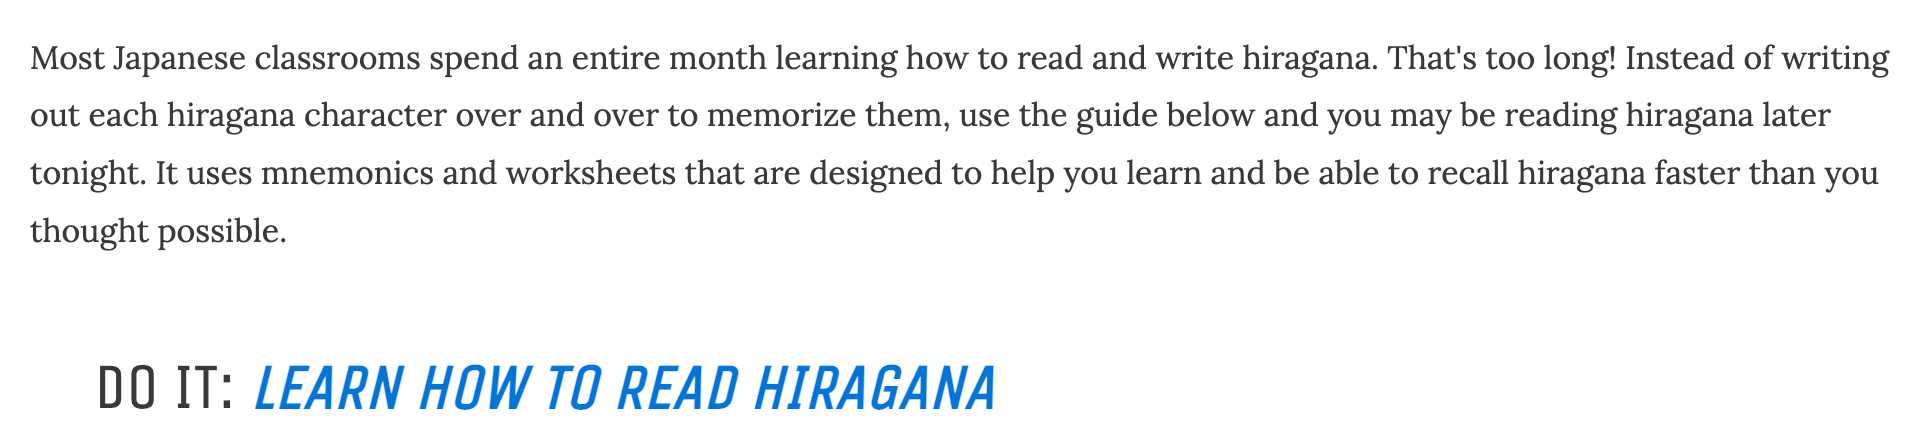 CTA incentivando o usuário a seguir para a próxima tarefa de aprender a ler hiragana